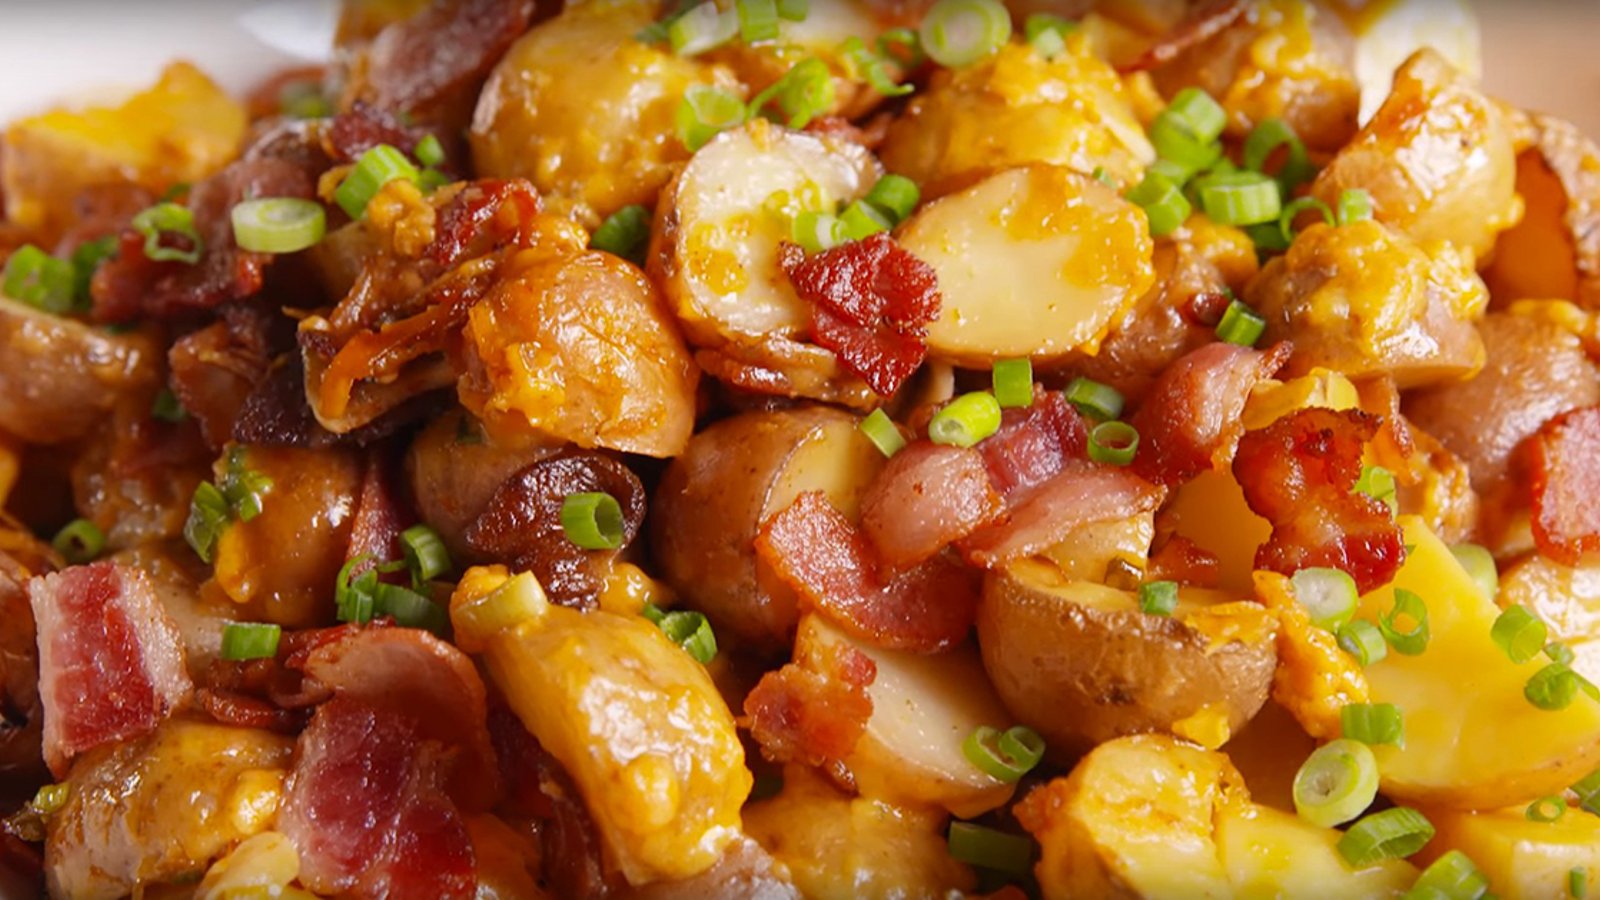 Irrésistibles? Ces pommes de terre au bacon auront un succès complètement fou!